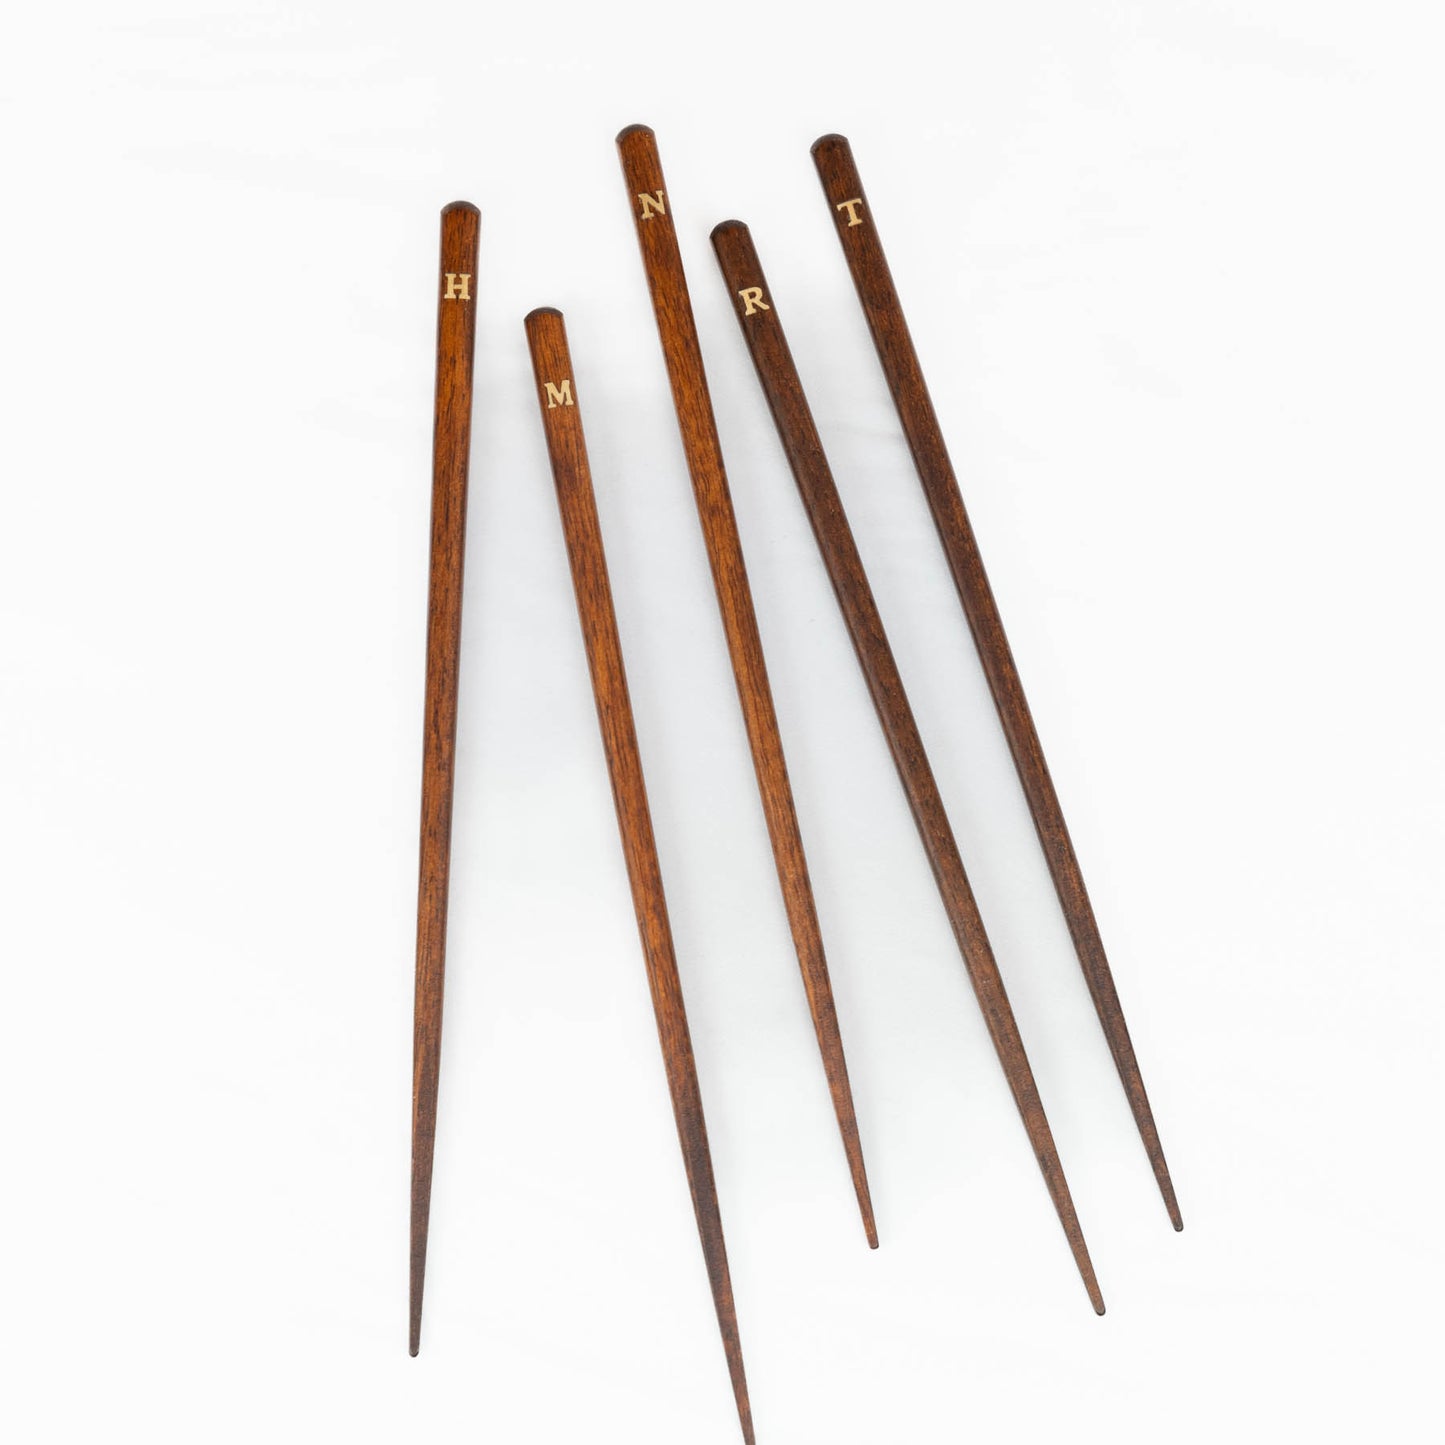 Graport  -Iinitial Chopsticks